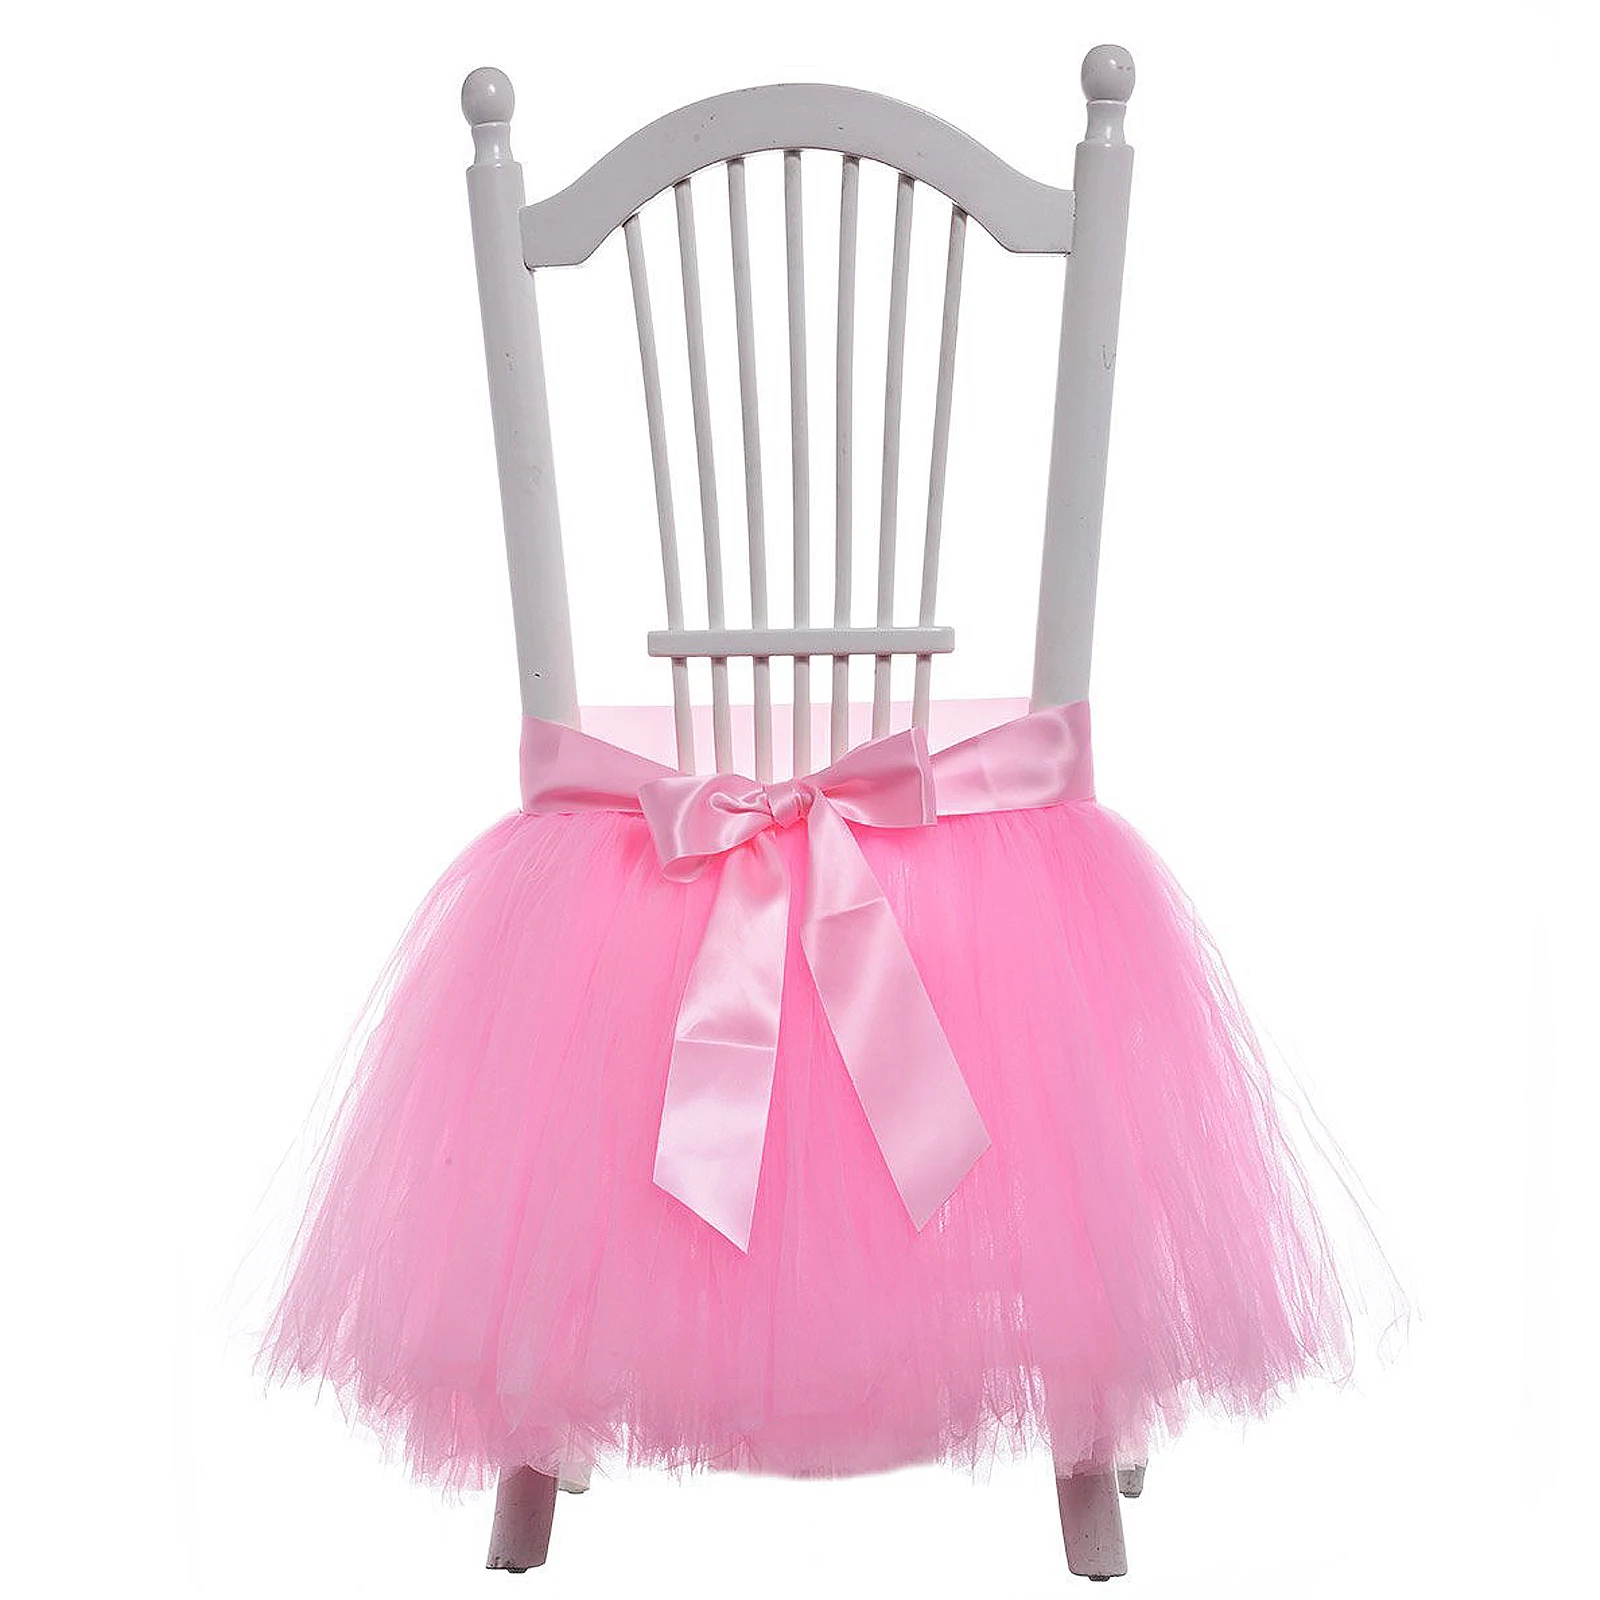 1 шт. 45*45 см Тюлевая юбка-пачка для стула с поясом, чехол для стула с лентой для свадьбы, украшение для вечеринки в день рождения, праздничные вечерние принадлежности